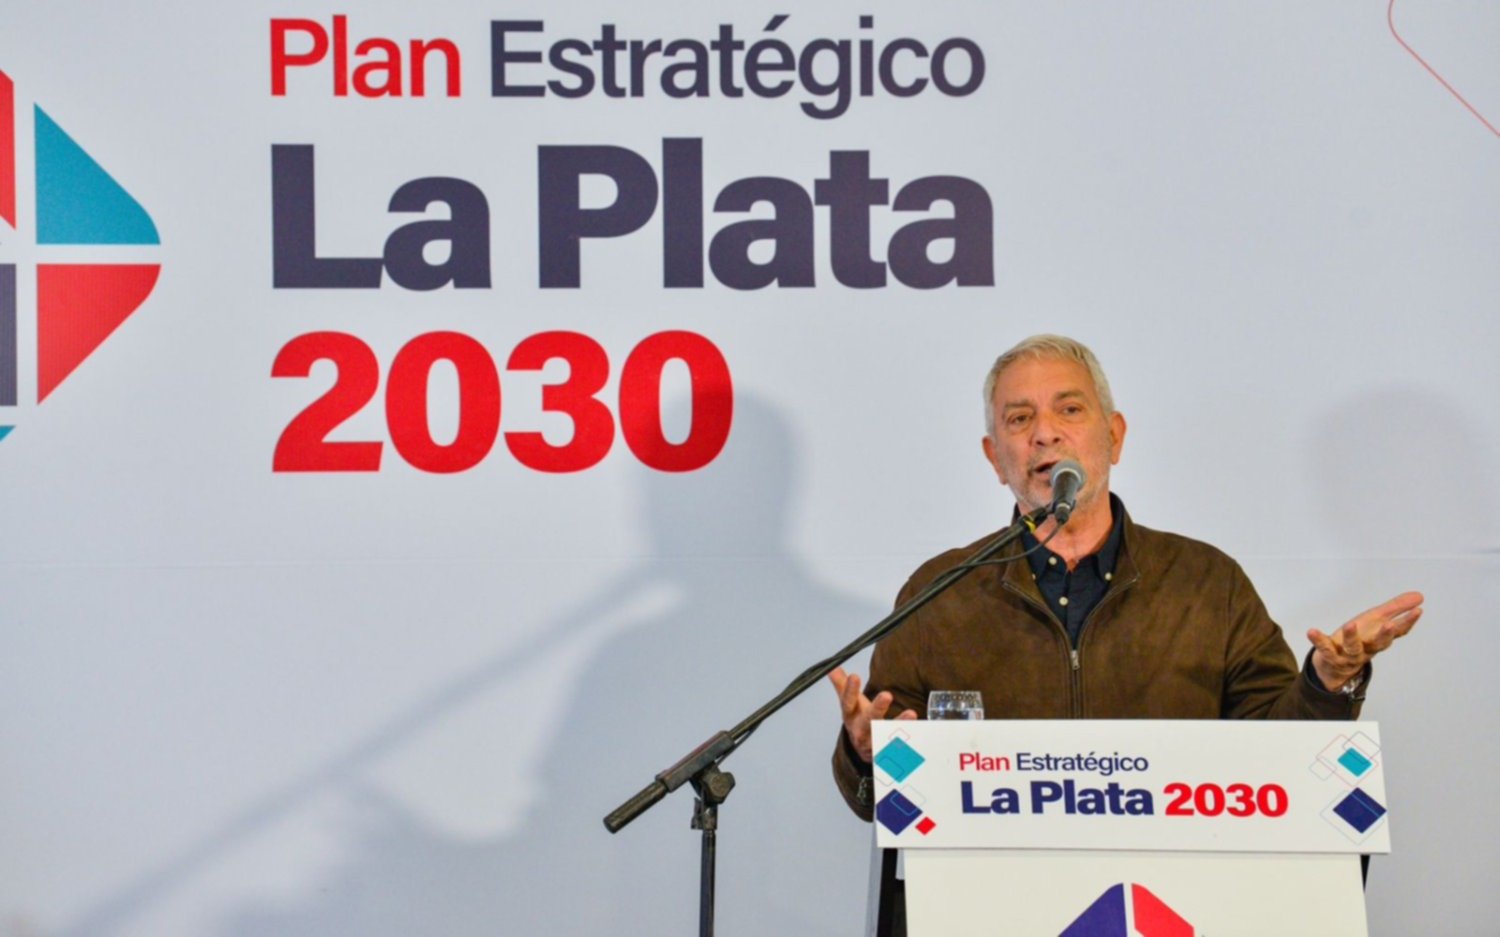 En un documental Alak presenta el Plan Estratégico que propone implementar en La Plata